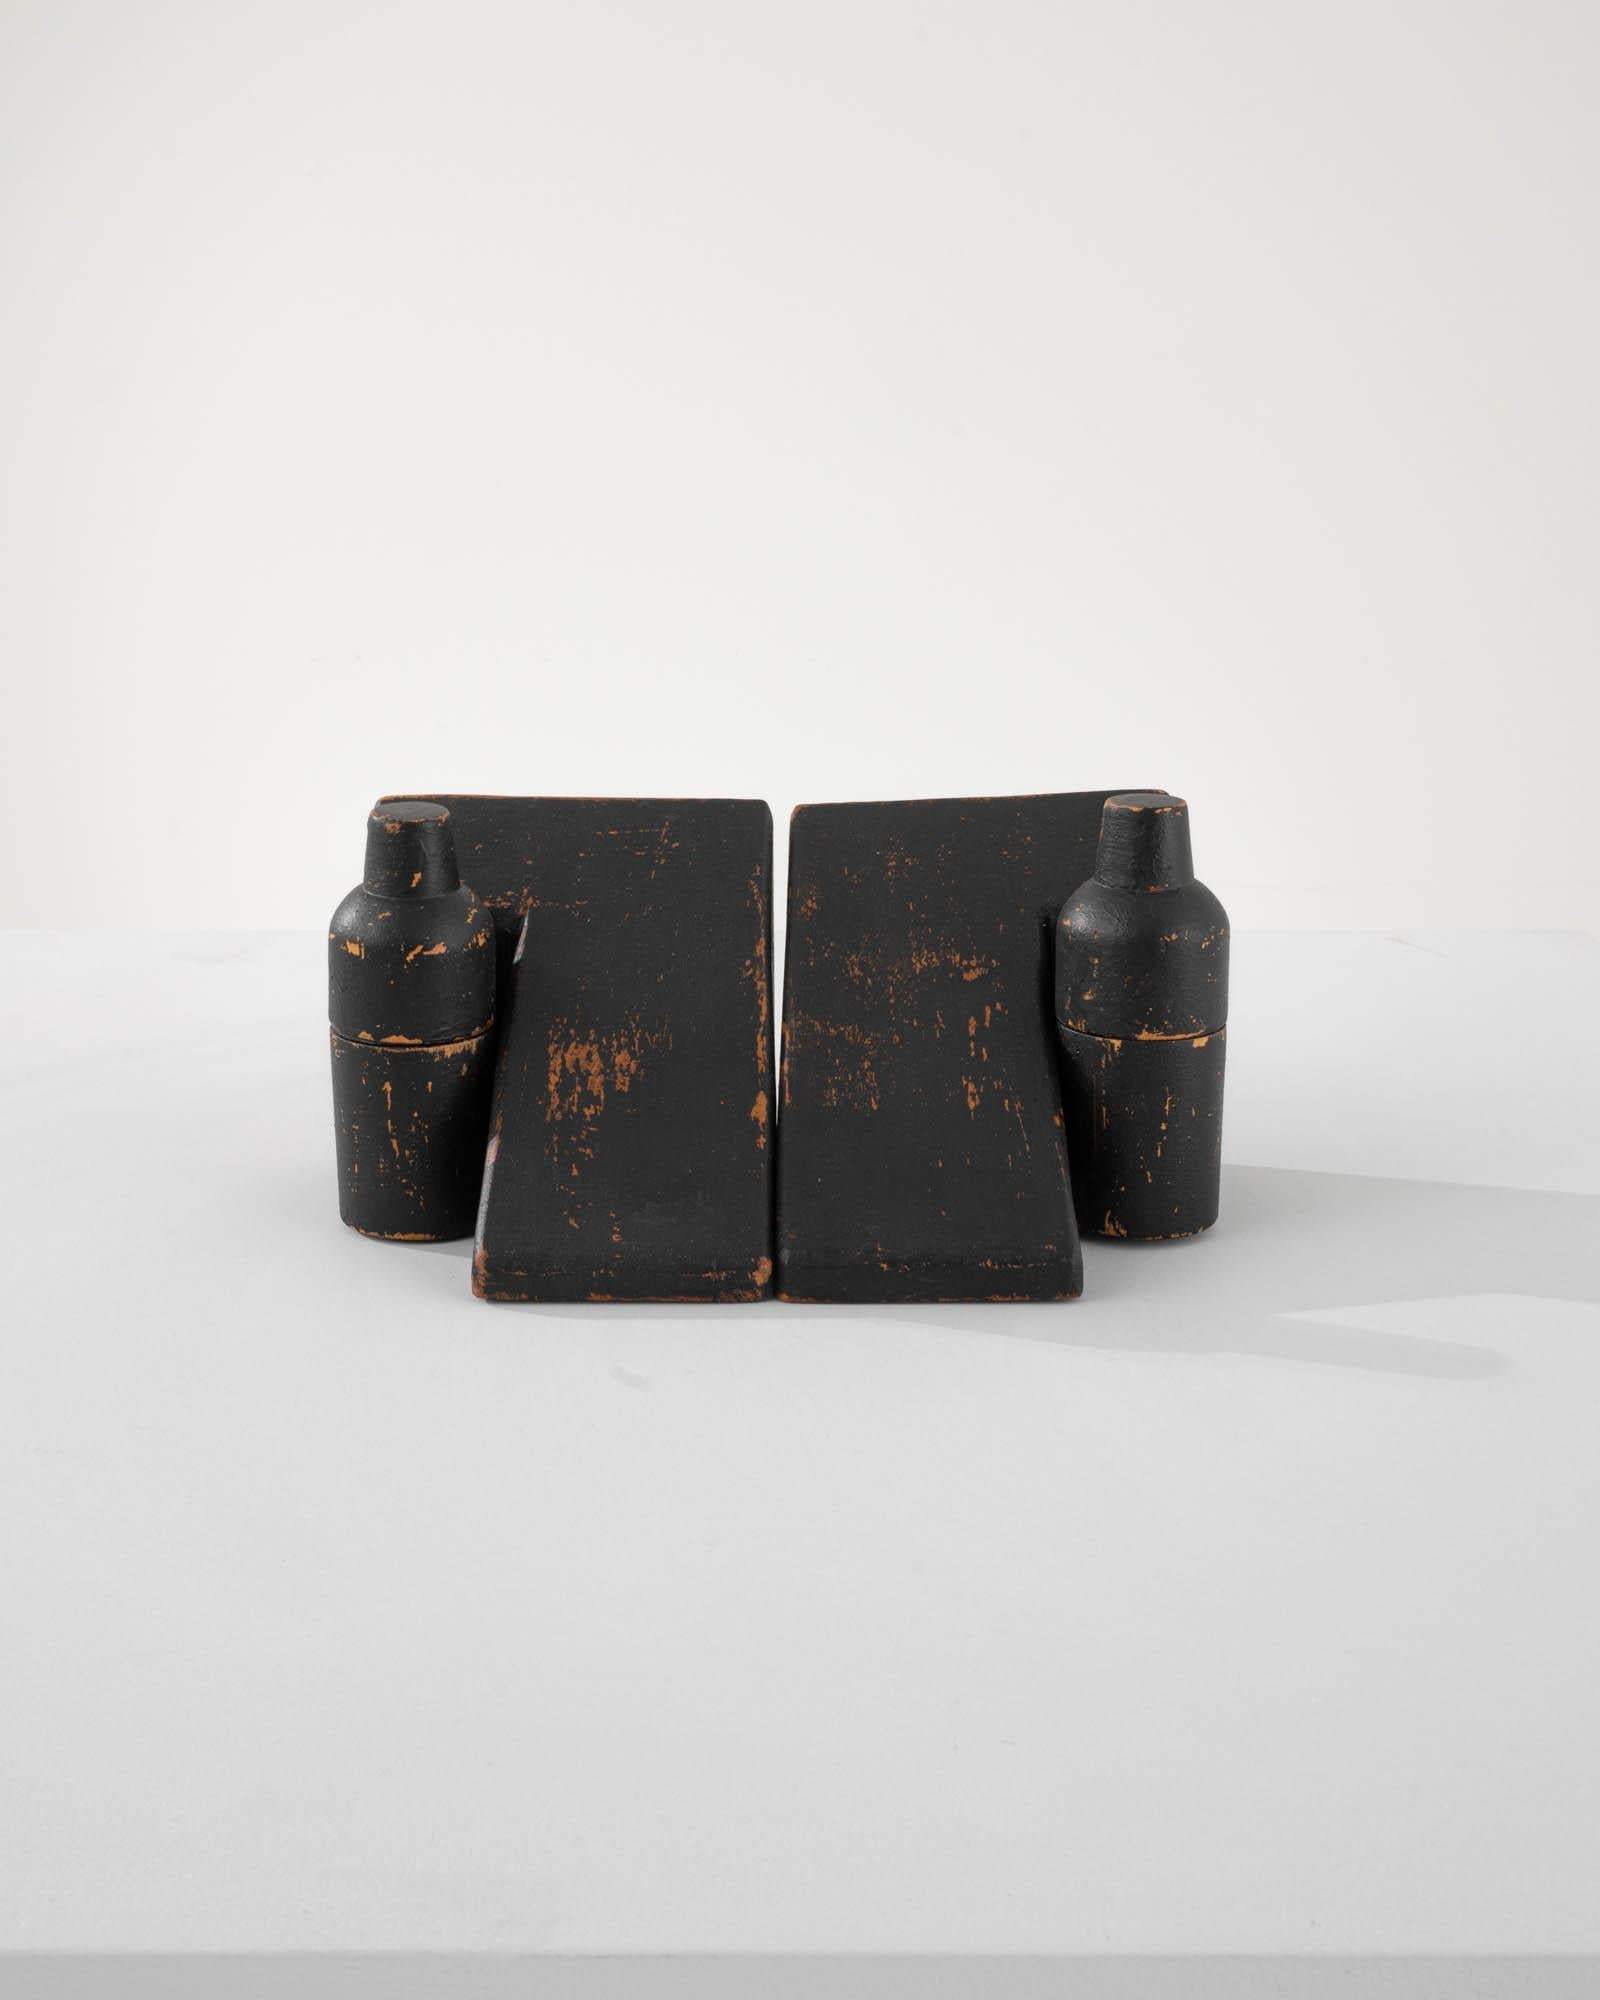 Diese originellen Buchstützen, die aus dem Frankreich des 20. Jahrhunderts stammen, zeigen eine fachmännische Schnitzerei in Form von glatten, L-förmigen geometrischen Figuren. Zusammen mit den flaschenartigen Holzbehältern bieten sie diskreten